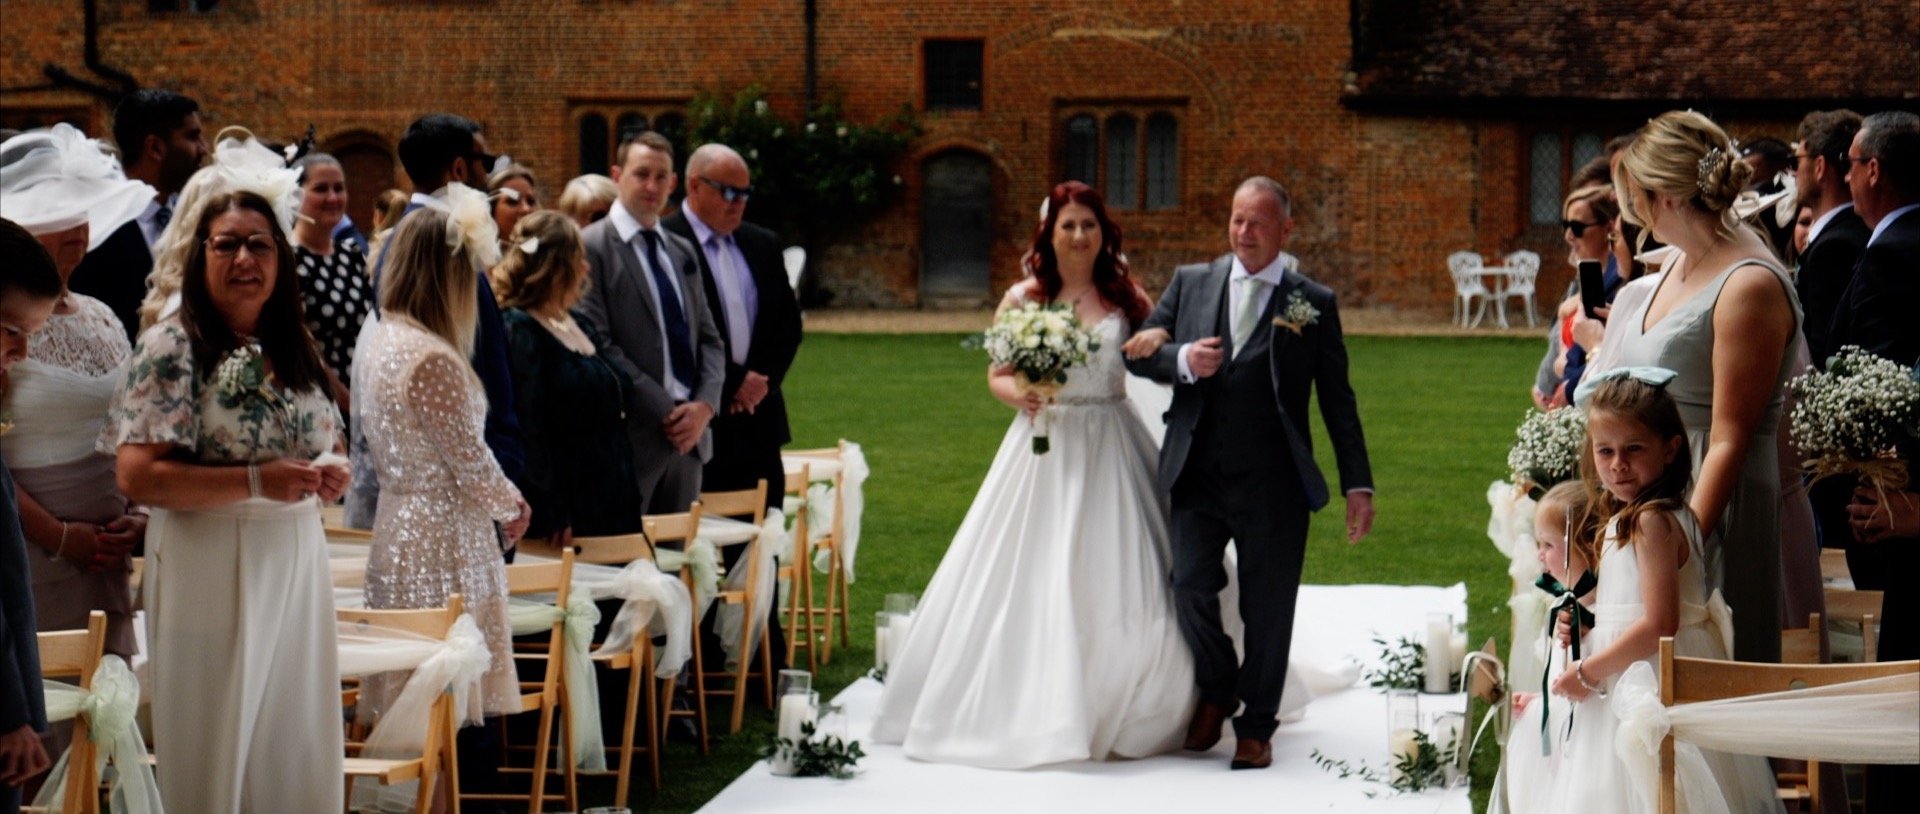 Walking down the aisle bride at Leez Priory wedding video.jpg